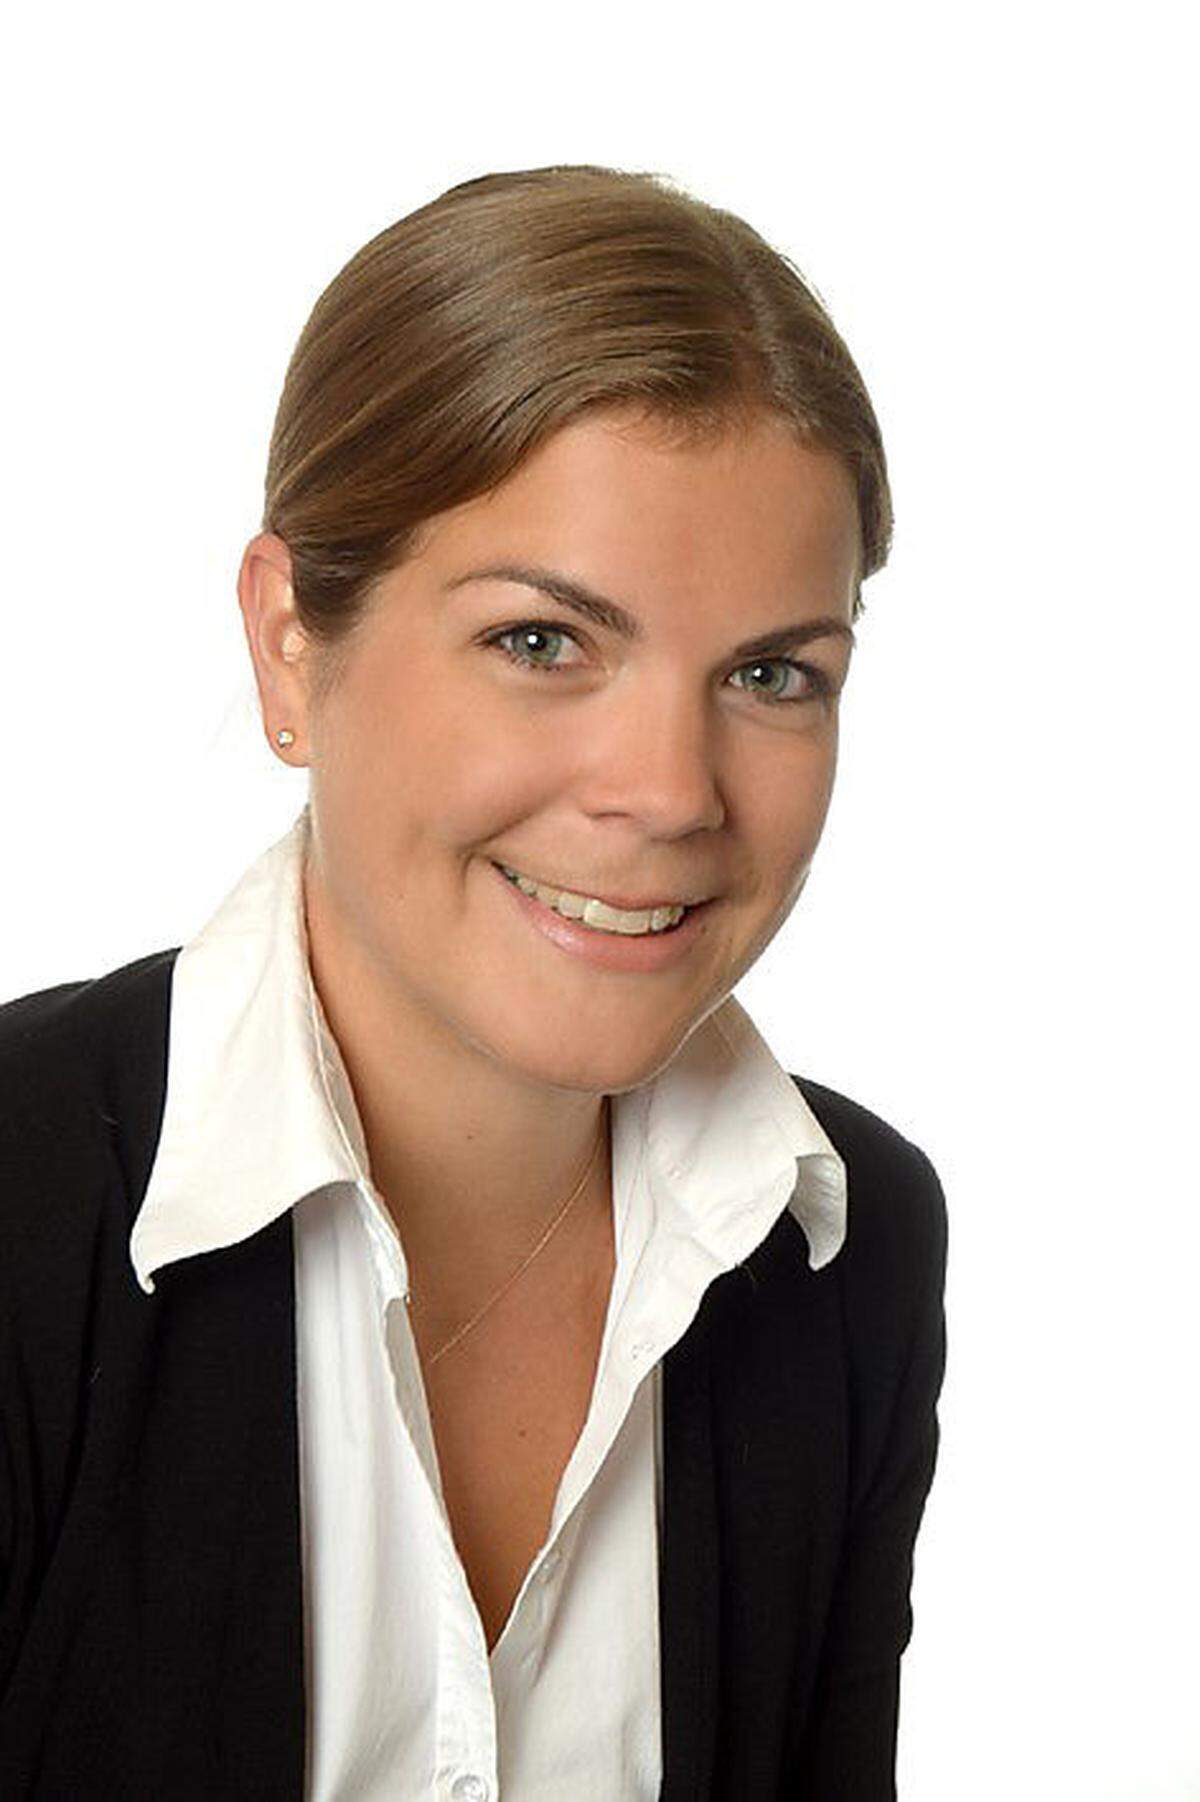 Janine Tusch ist seit Mai 2019 als Consultant Valuation bei der EHL Immobilien Bewertung GmbH tätig. Die 30-Jährige studierte Rechtswissenschaften an der Universität Wien und arbeitete zuvor in der Immobilienbewertung bei Wiener Beratungsunternehmen. (red., 22. 5. 2019)